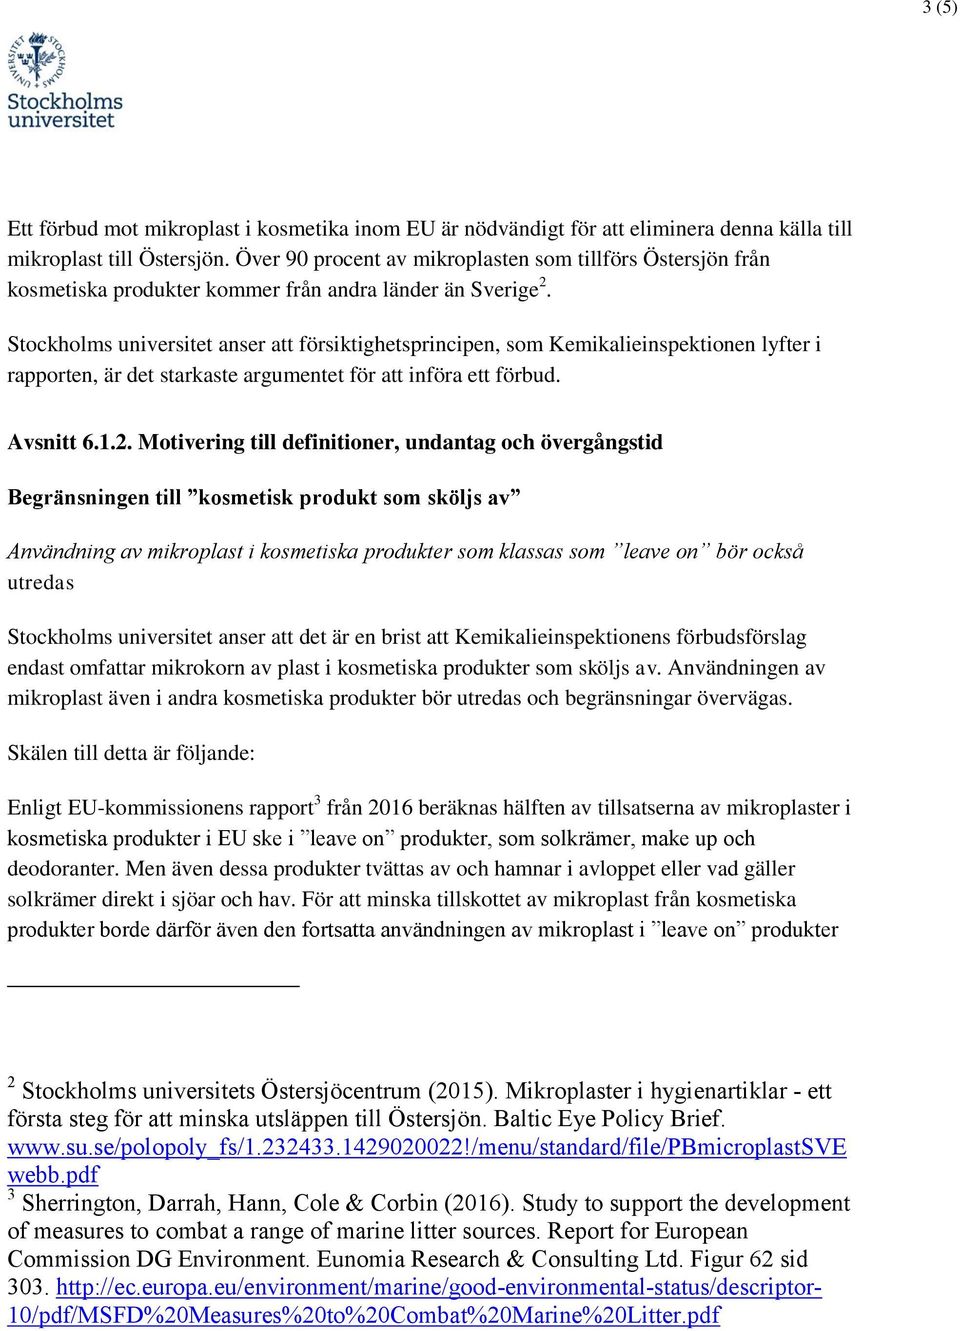 Stockholms universitet anser att försiktighetsprincipen, som Kemikalieinspektionen lyfter i rapporten, är det starkaste argumentet för att införa ett förbud. Avsnitt 6.1.2.